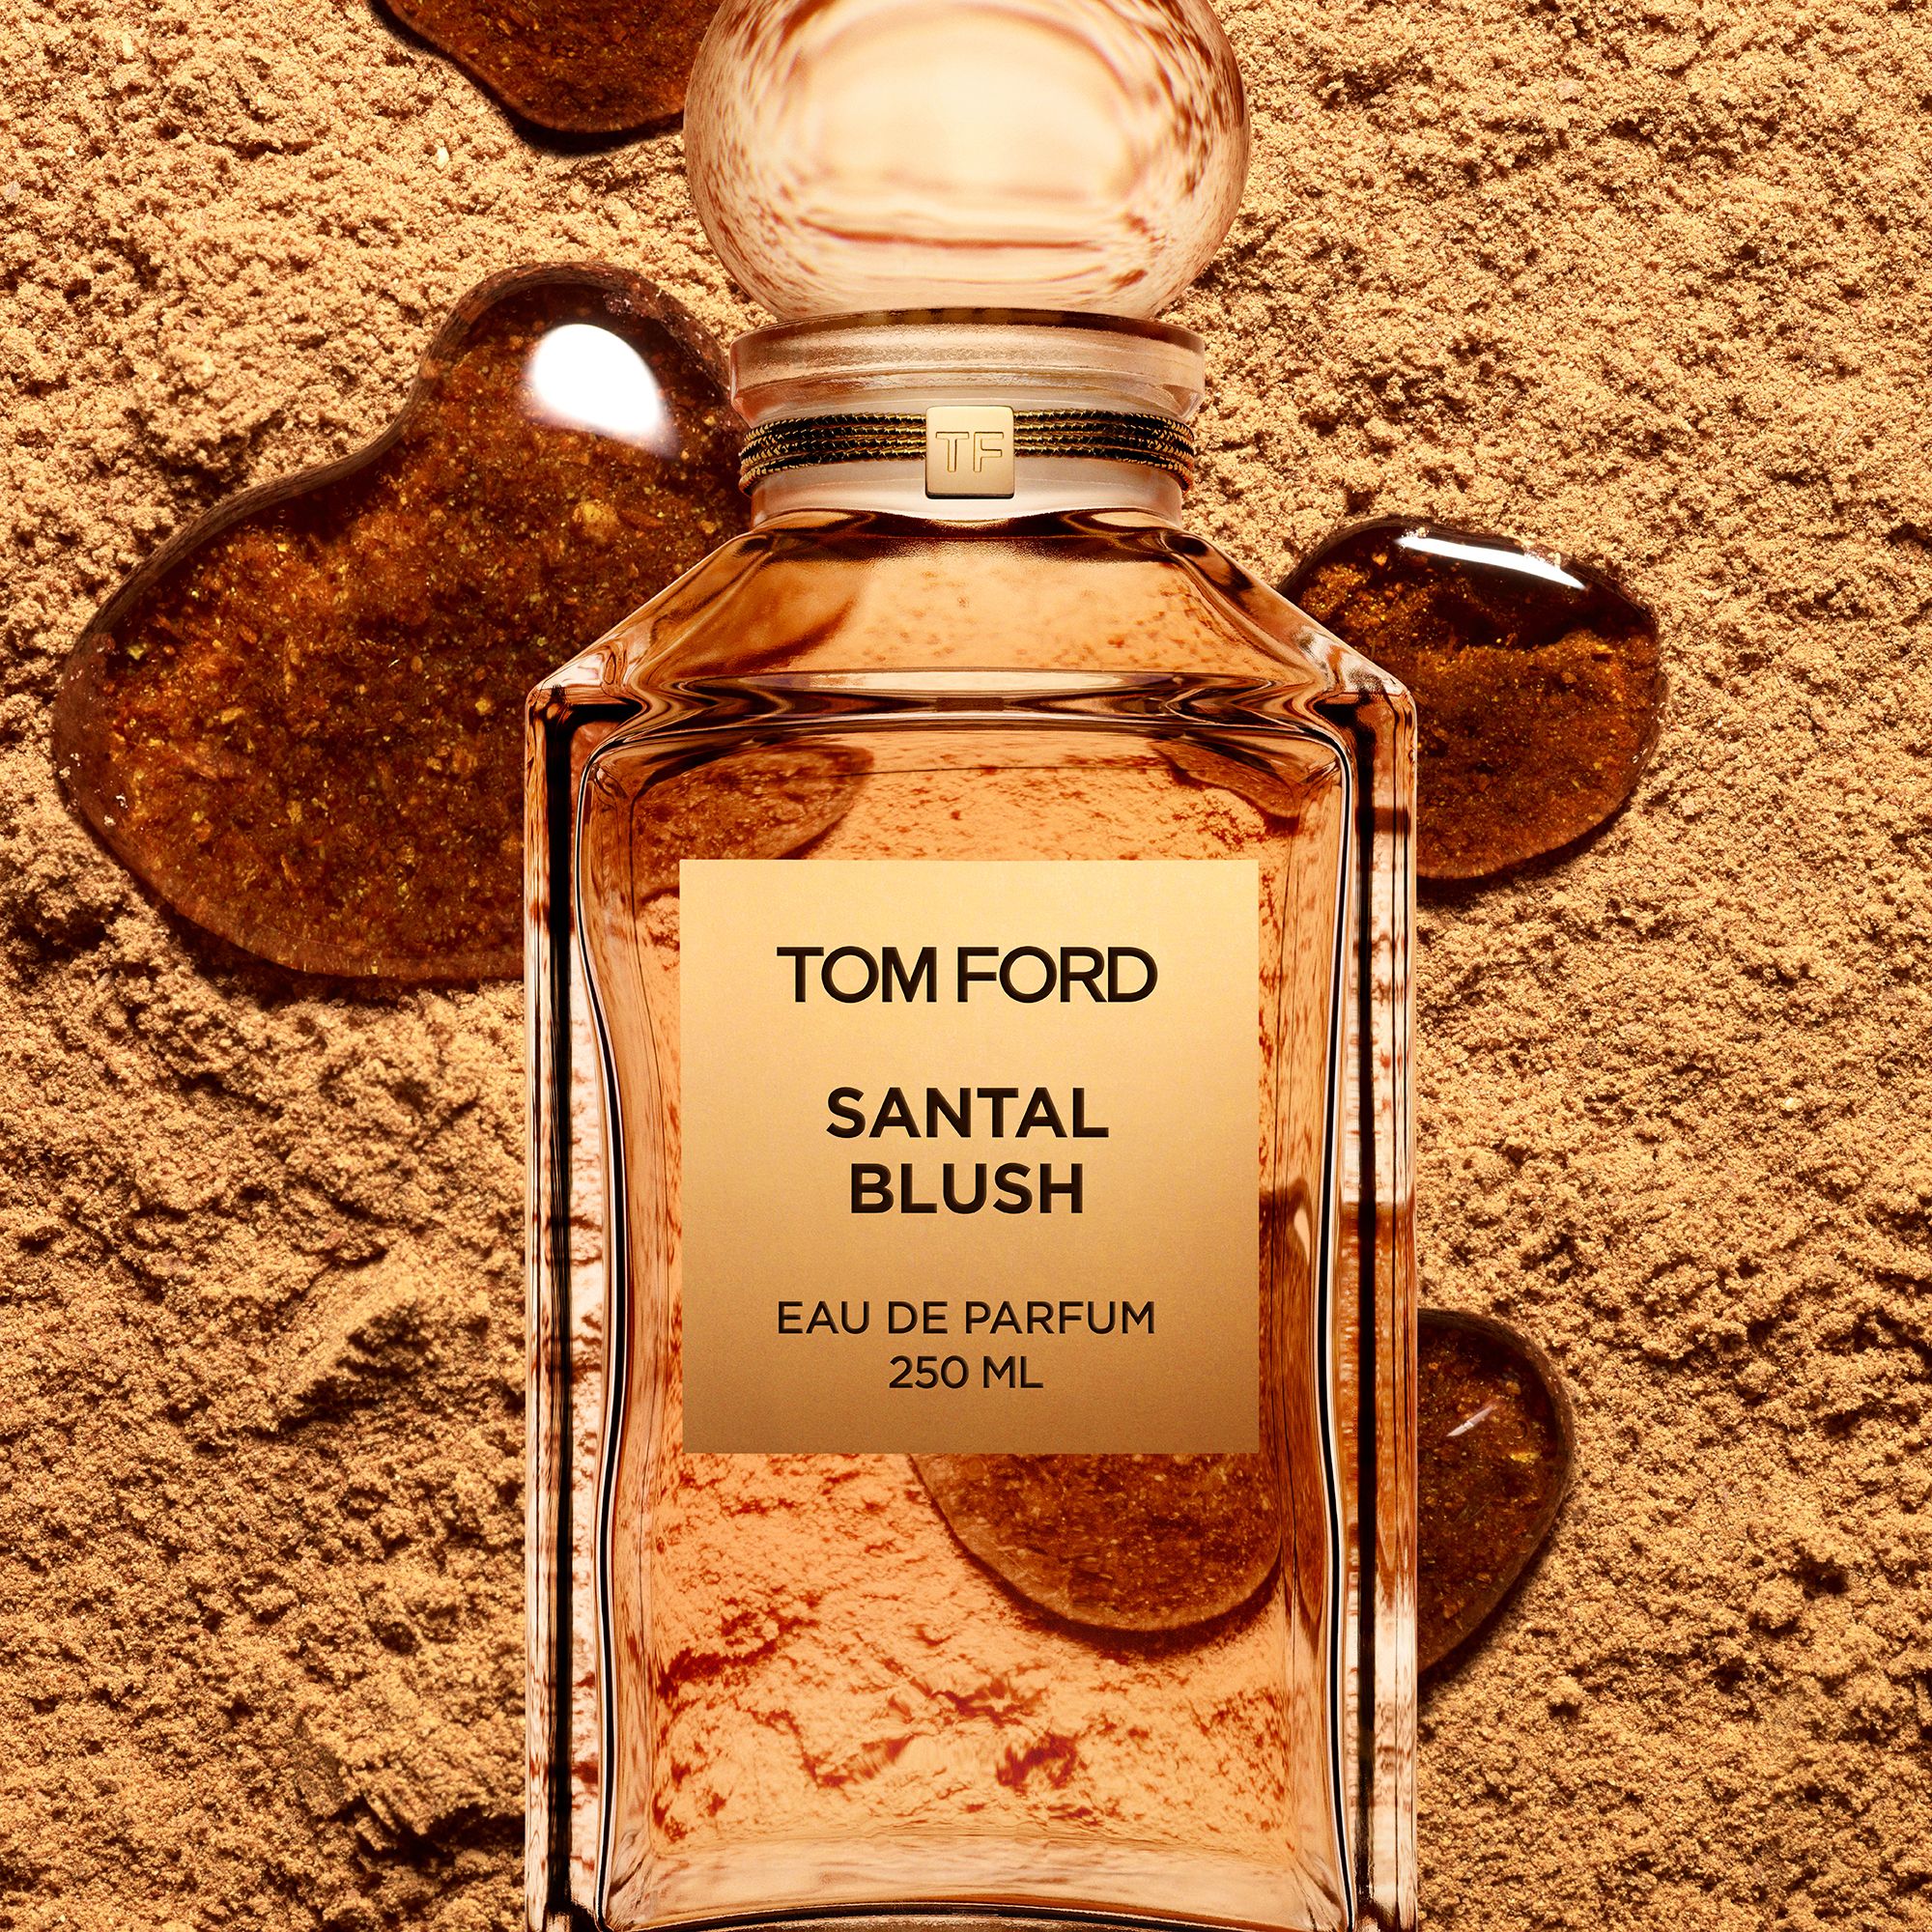 TOM FORD Private Blend Santal Blush Eau de Parfum, 250ml